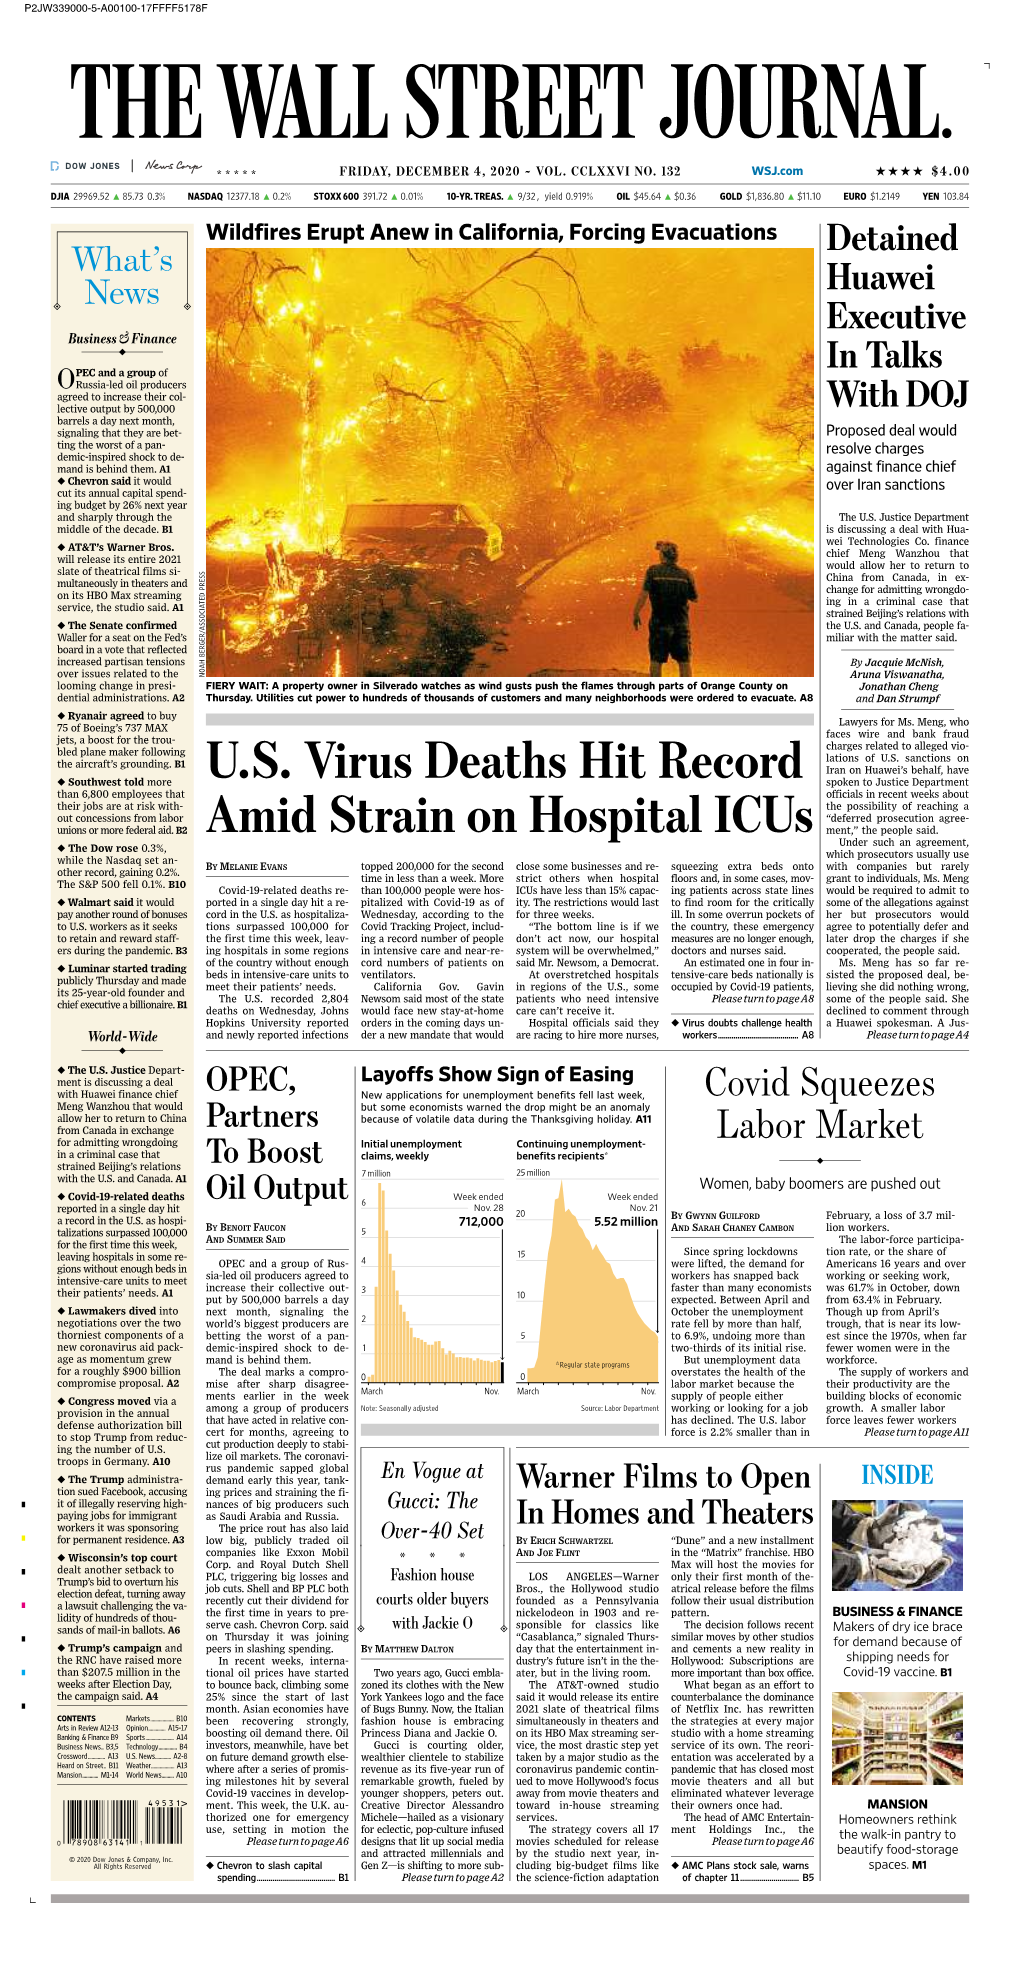 U.S. Virus Deaths Hit Record Amid Strain on Hospital Icus